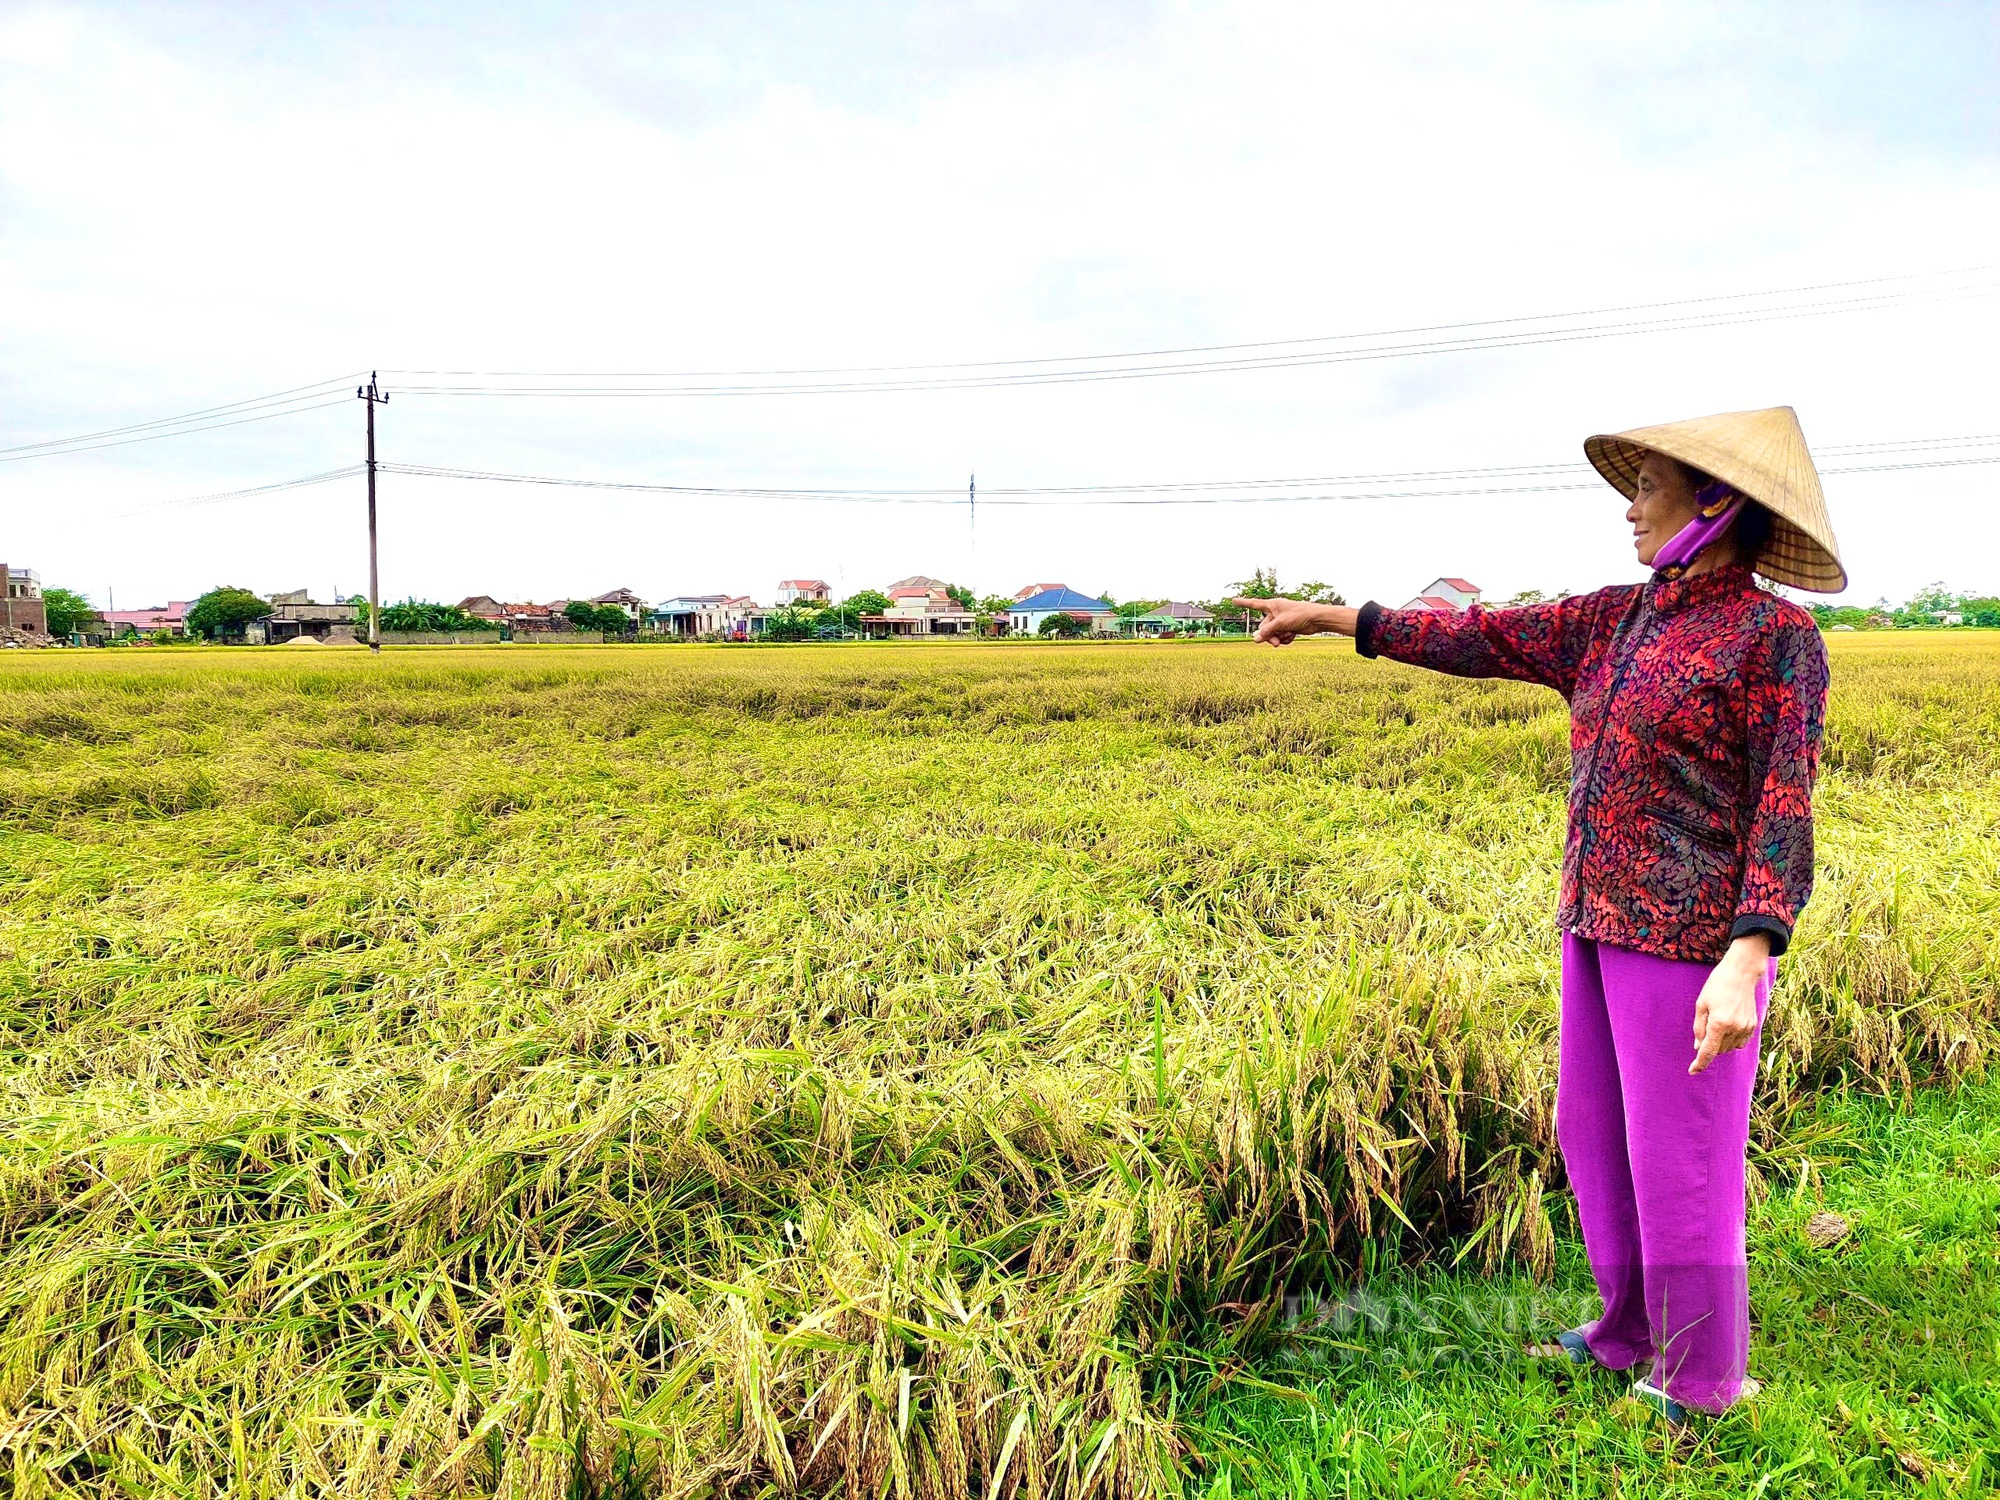 Quảng Bình: Giông lốc khiến hàng nghìn ha lúa gần thu hoạch ngã rạp chìm trong nước - Ảnh 1.